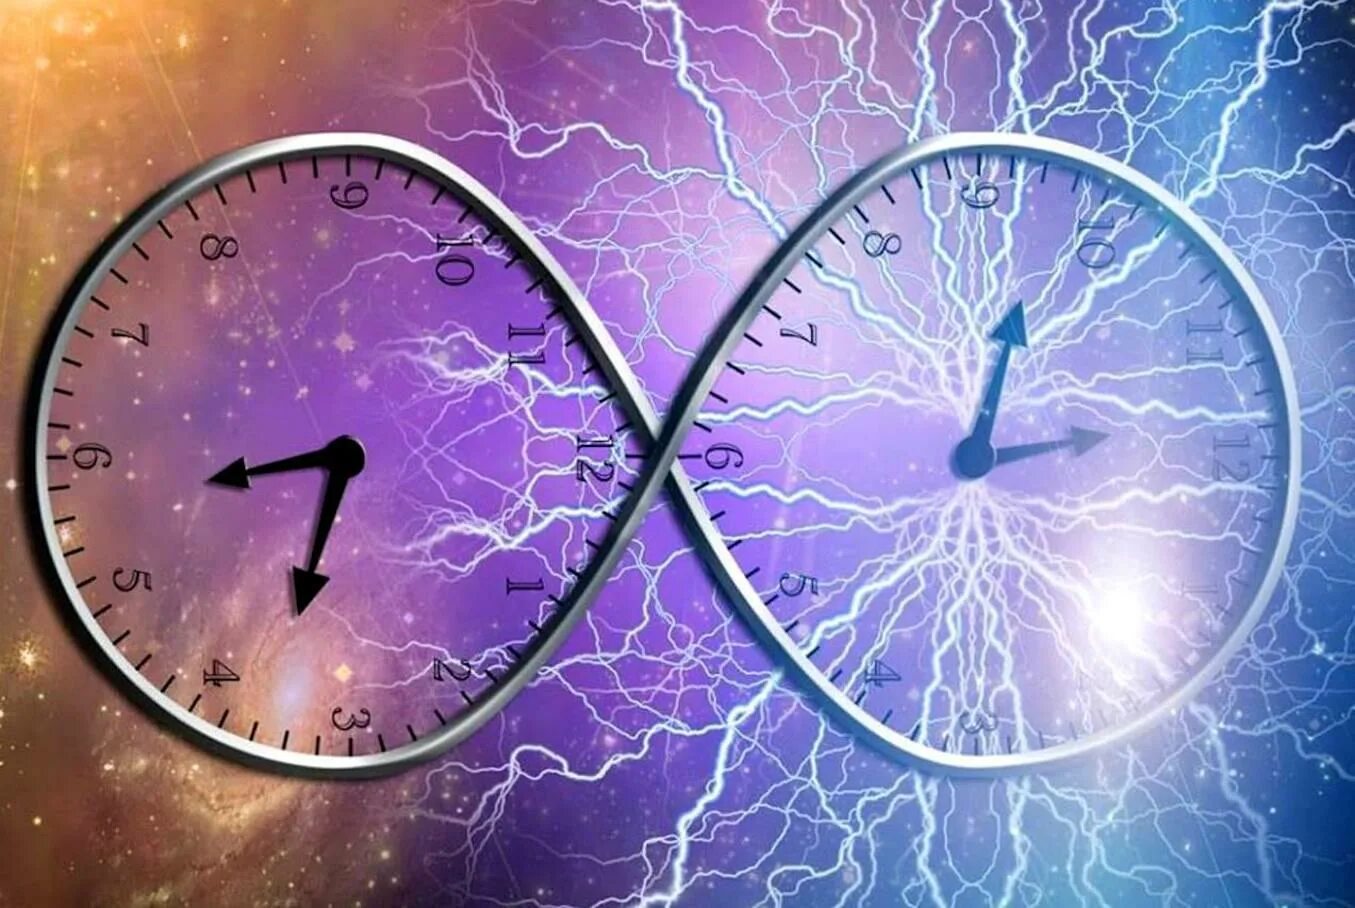 Повторяющиеся судьбы. Бесконечность времени и пространства. Изображение времени и пространства. Картина бесконечность времени. Часы вечности.